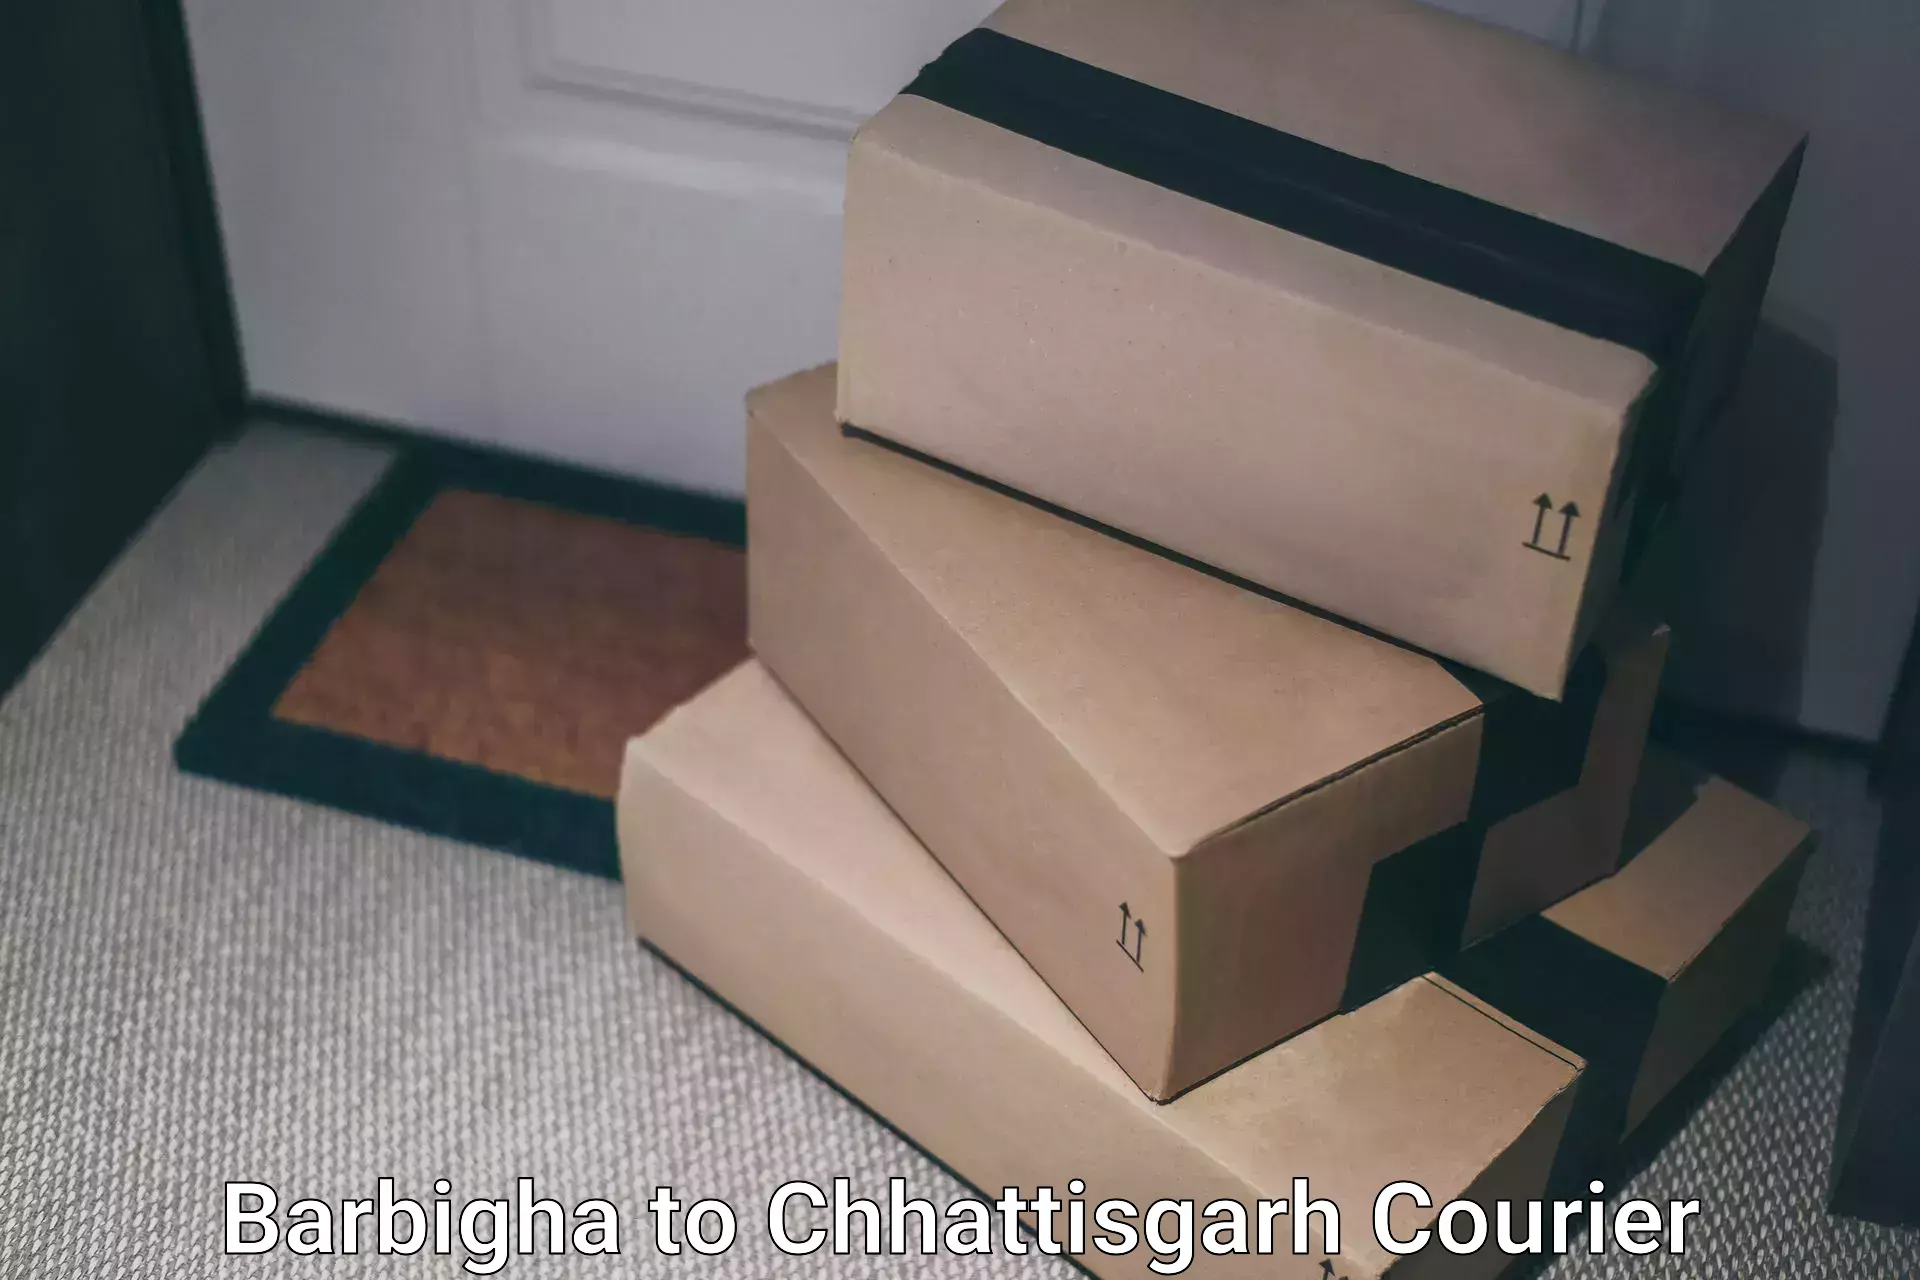 24-hour courier service Barbigha to Raigarh Chhattisgarh